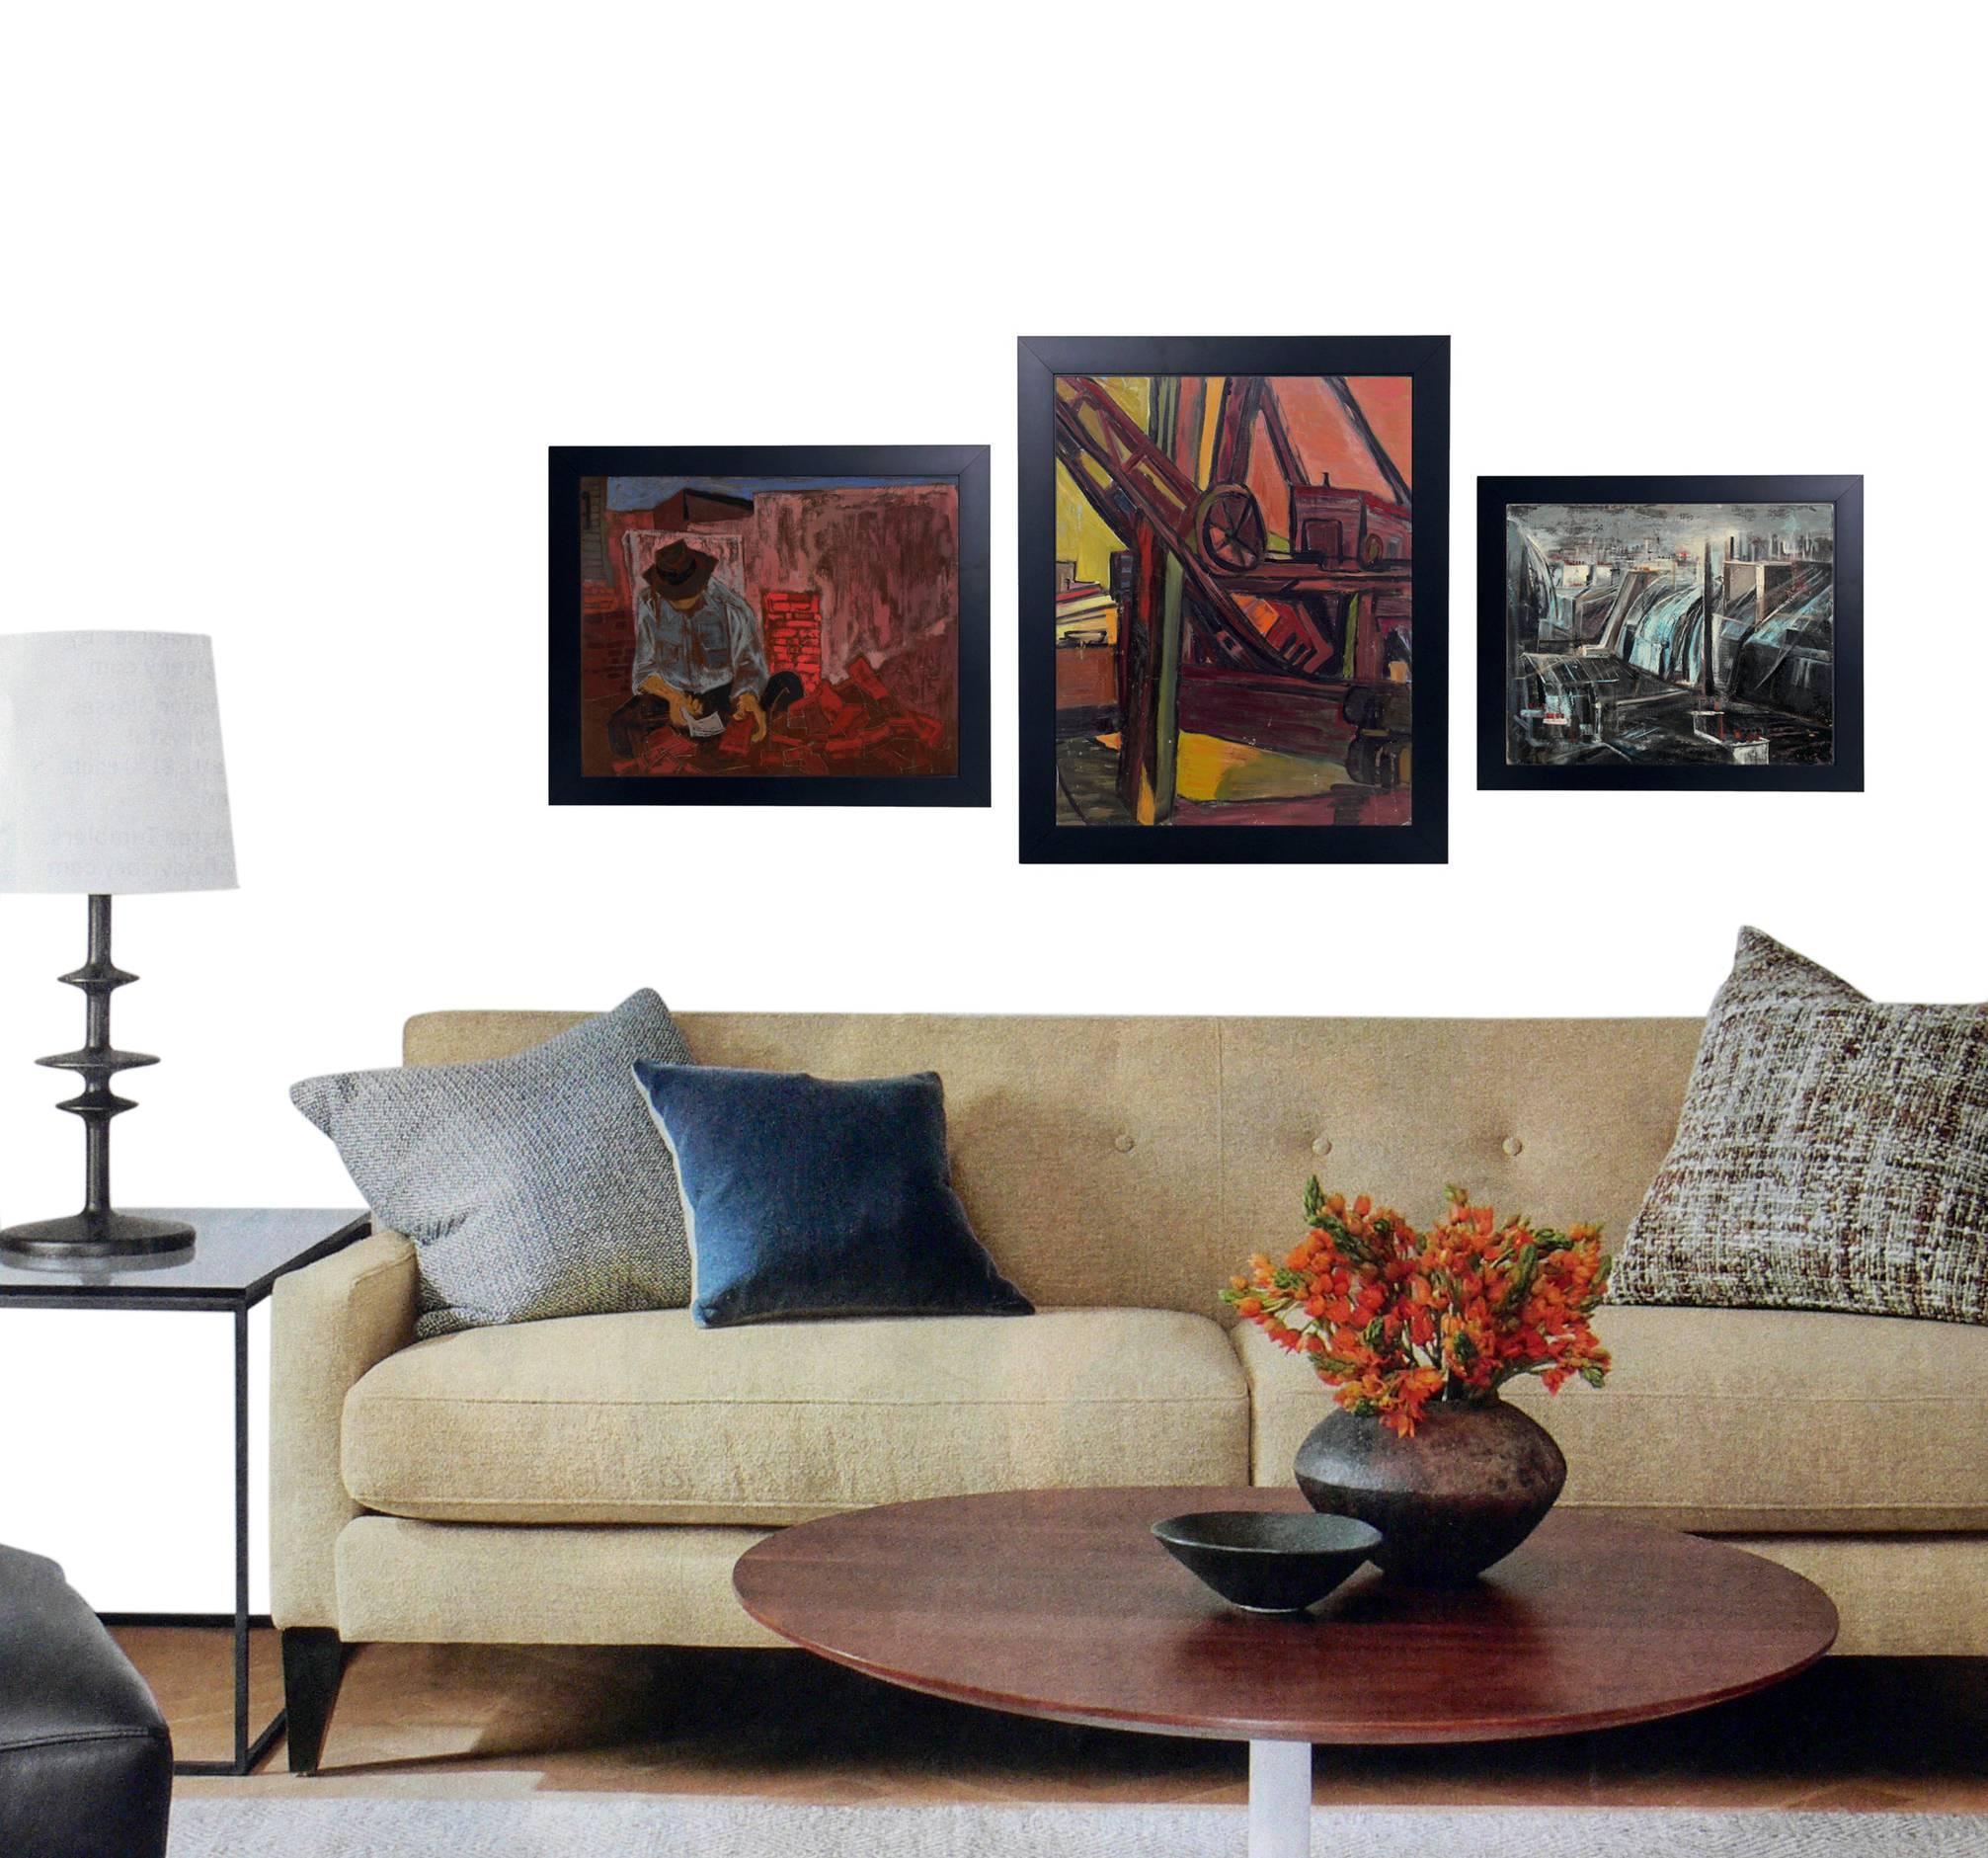 Groupe de trois peintures de l'ère WPA, américaines, vers les années 1930-1950. 
De gauche à droite, ce sont :
1) Peinture à l'huile de maçon en briques, américaine, vers les années 1930. Il mesure 23,5